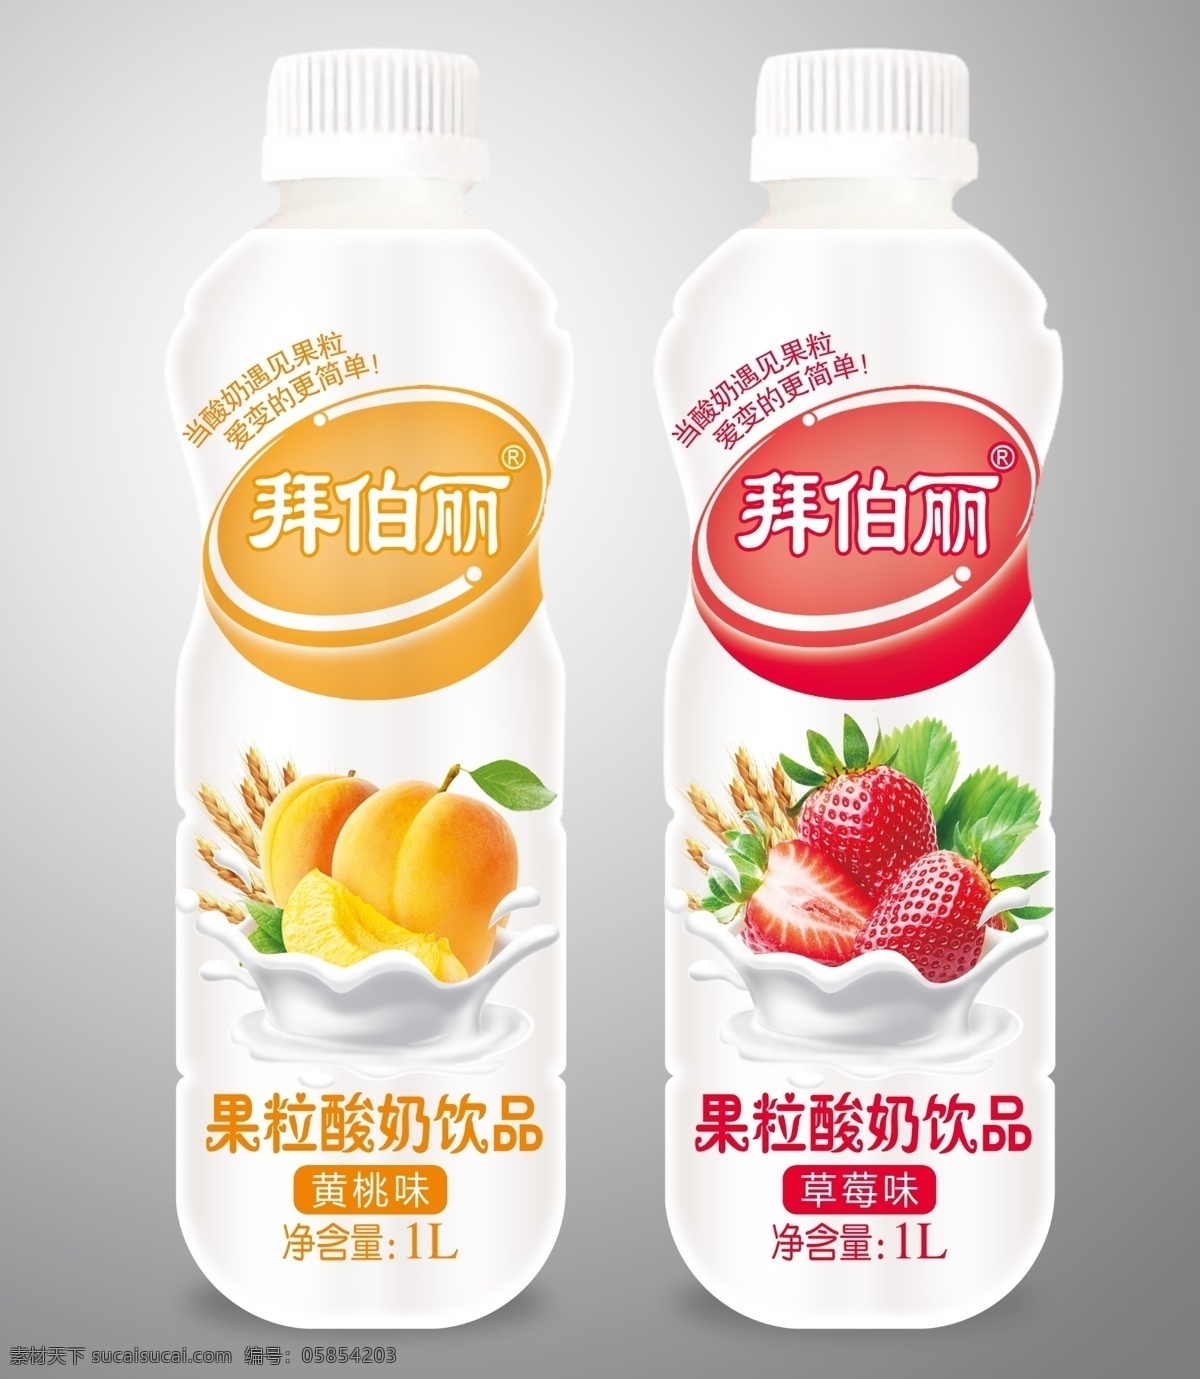 果粒酸奶饮料 酸奶包装 果粒酸奶 奶包装 果粒奶优 果汁奶源 分层